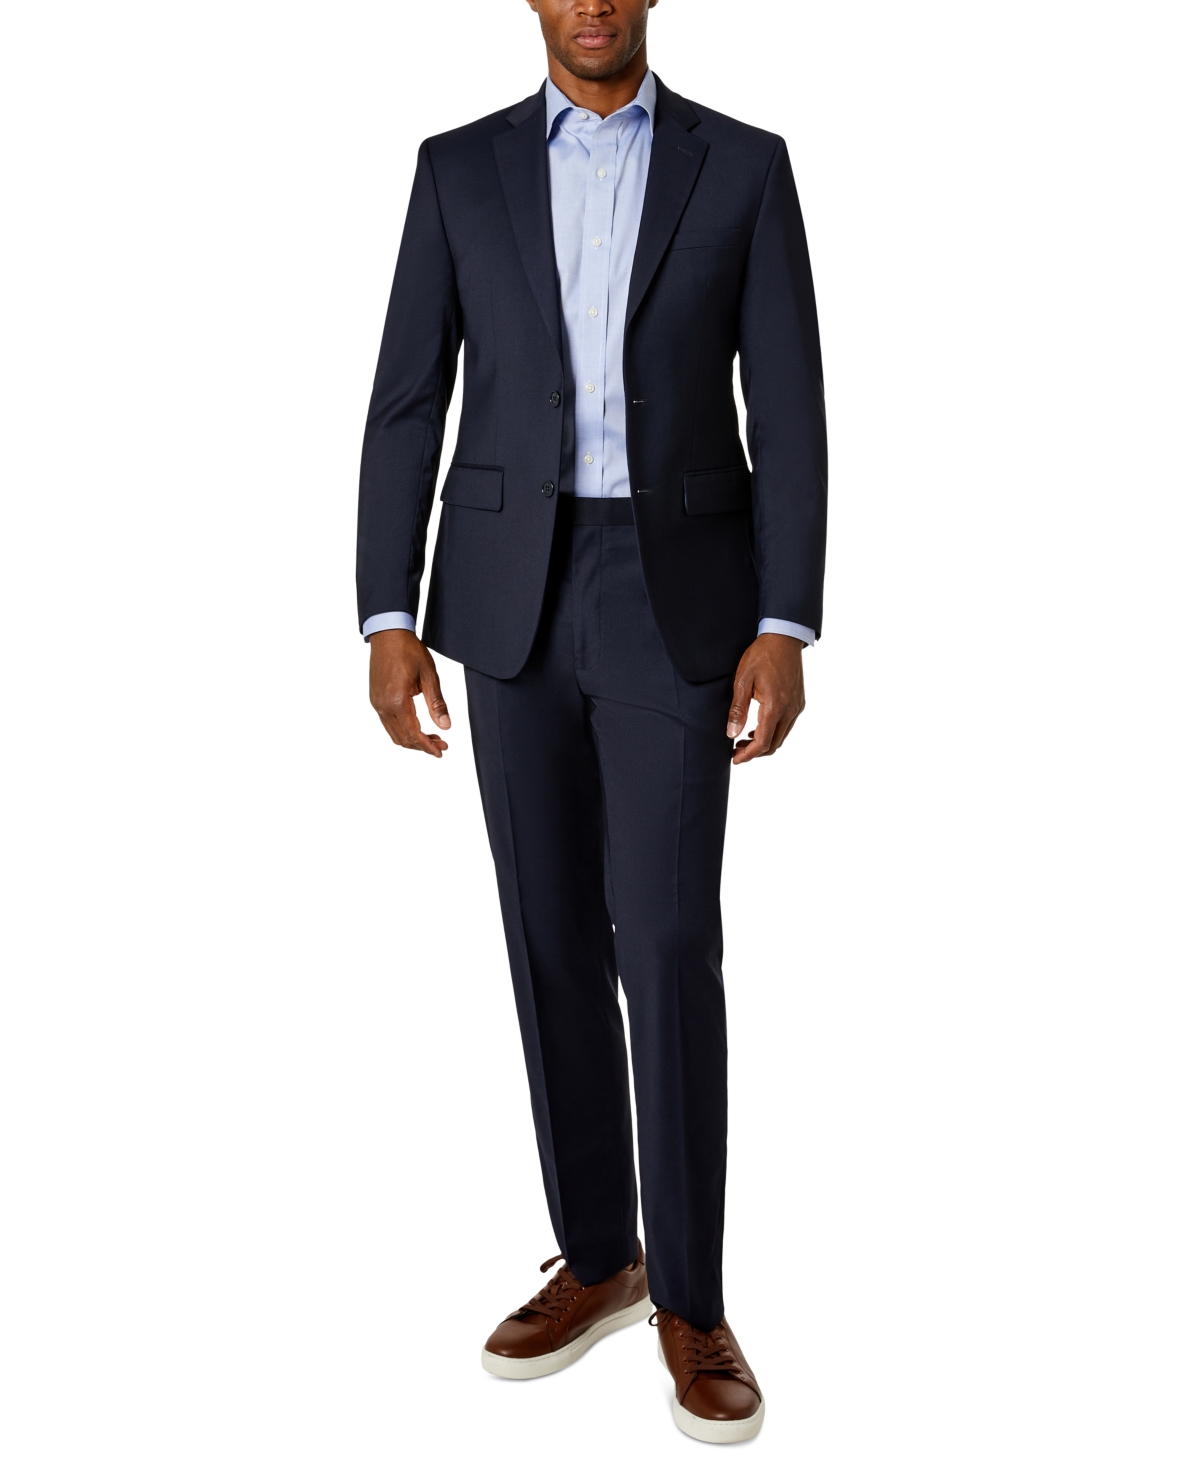 Van Heusen Flex Plain Men's Slim-Fit Suit $79.99